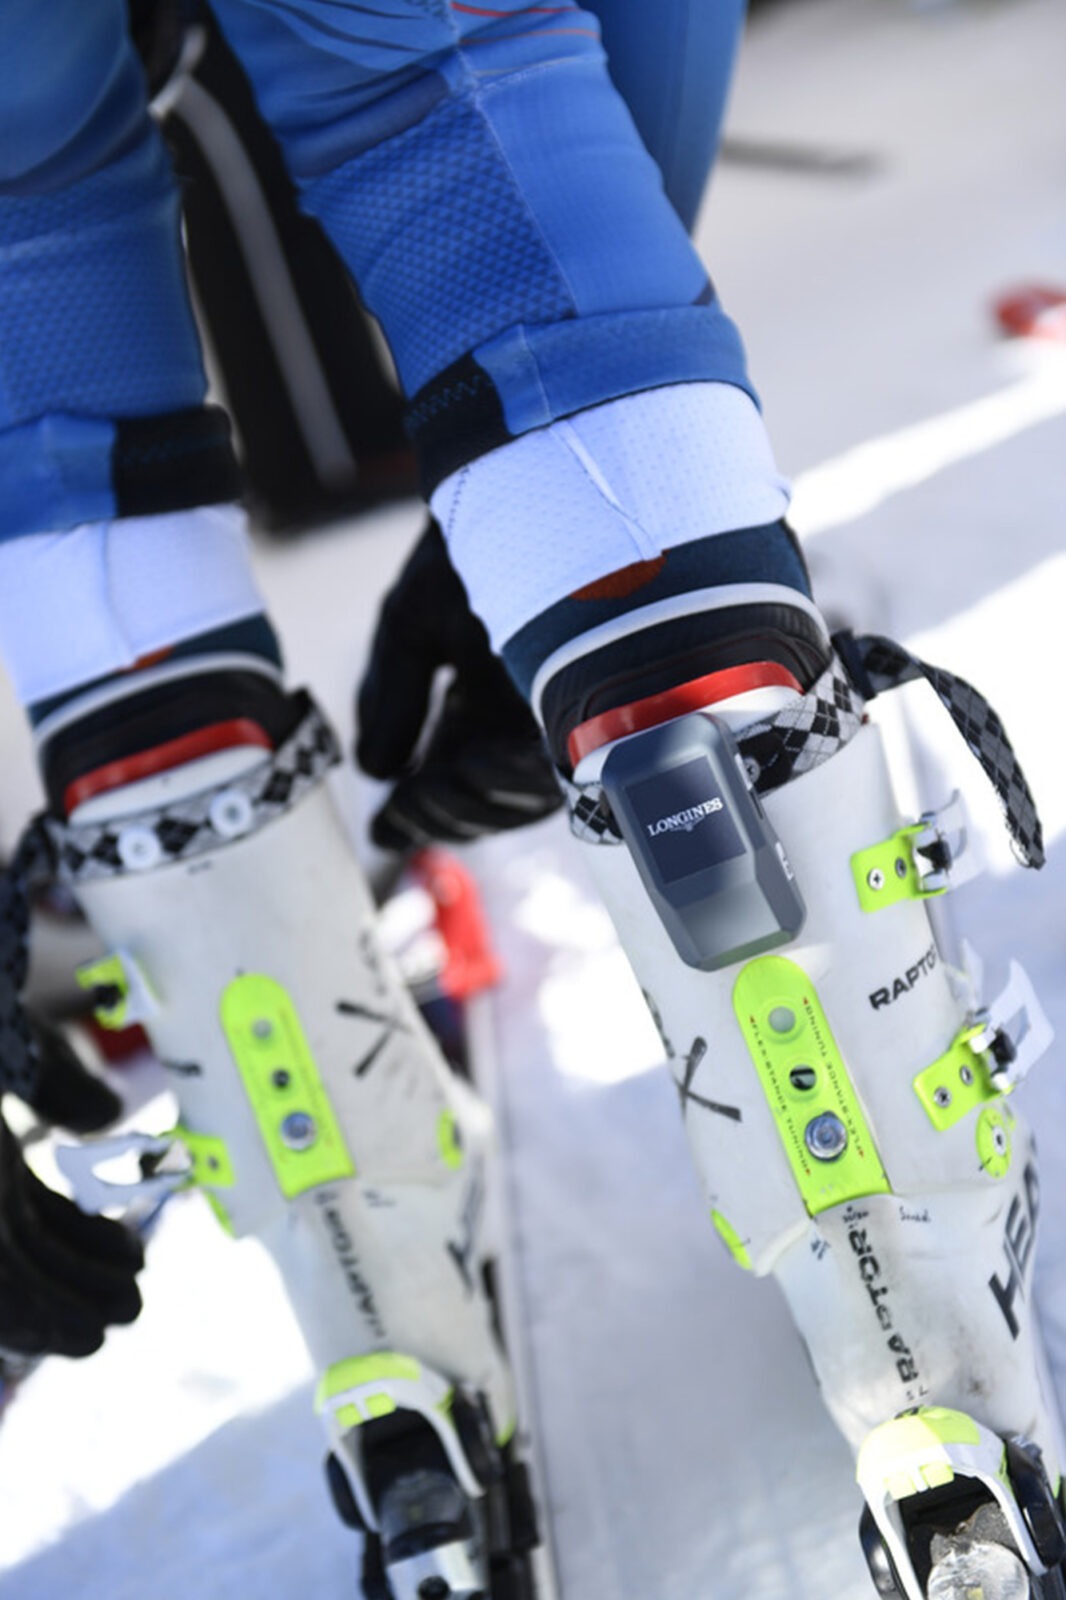 Longines et le chronométrage au ski - Longines Live Alpine Data System